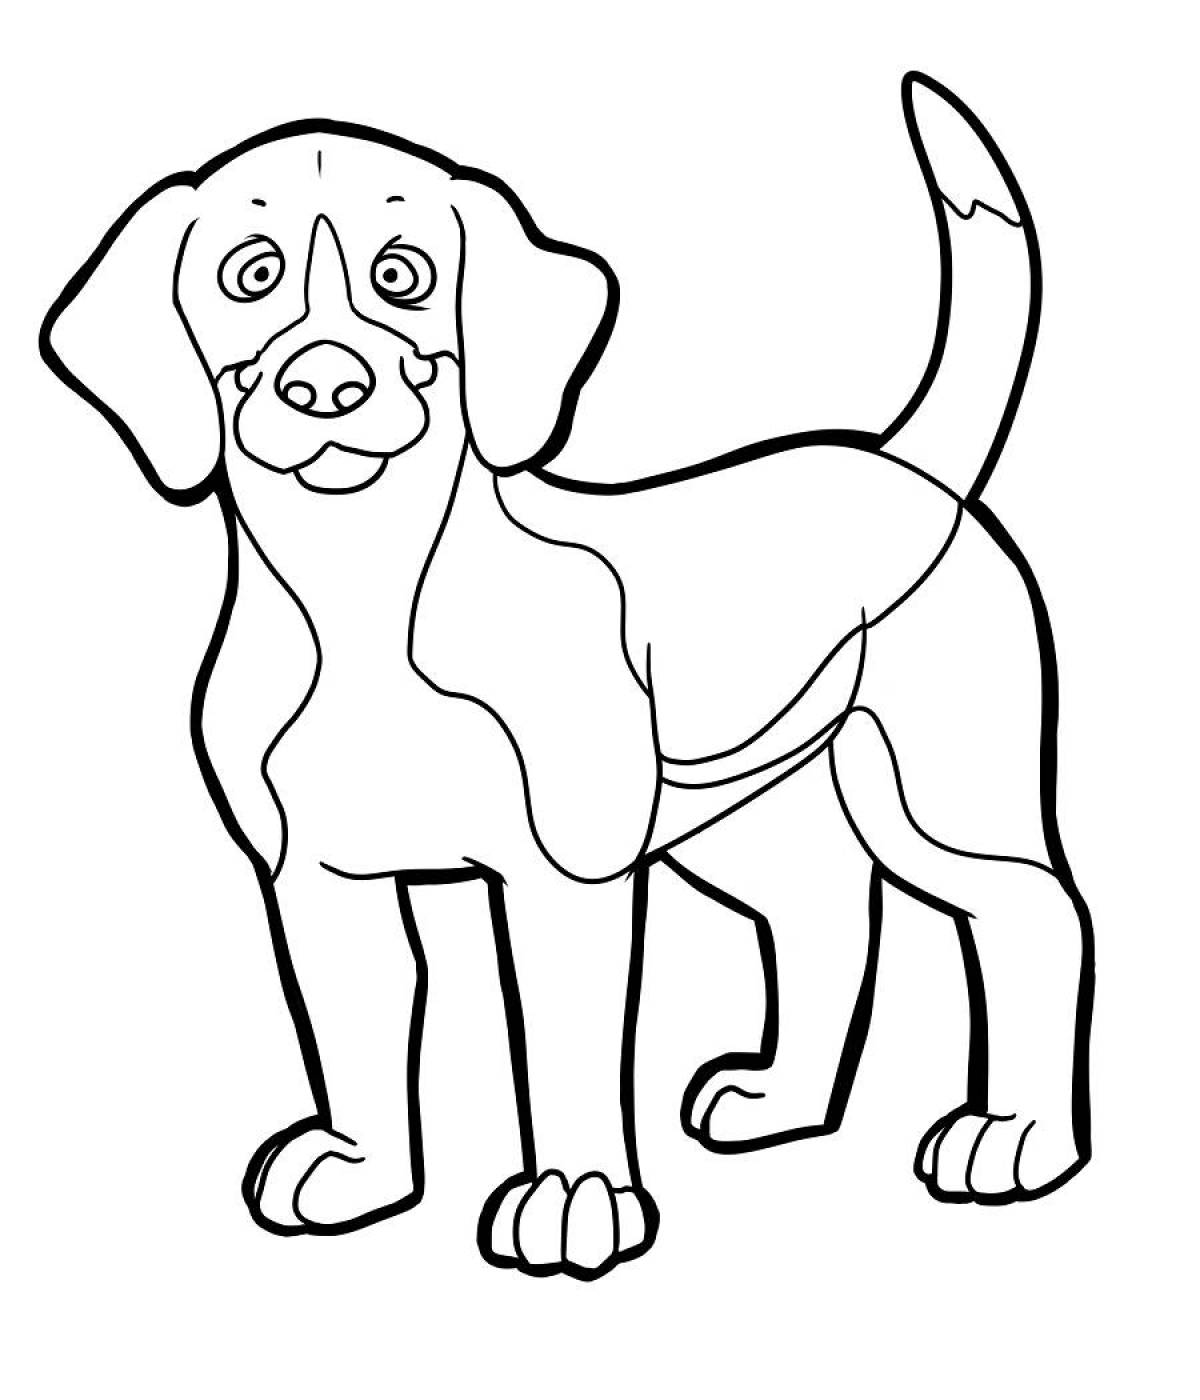 Стильная раскраска рисунок собаки